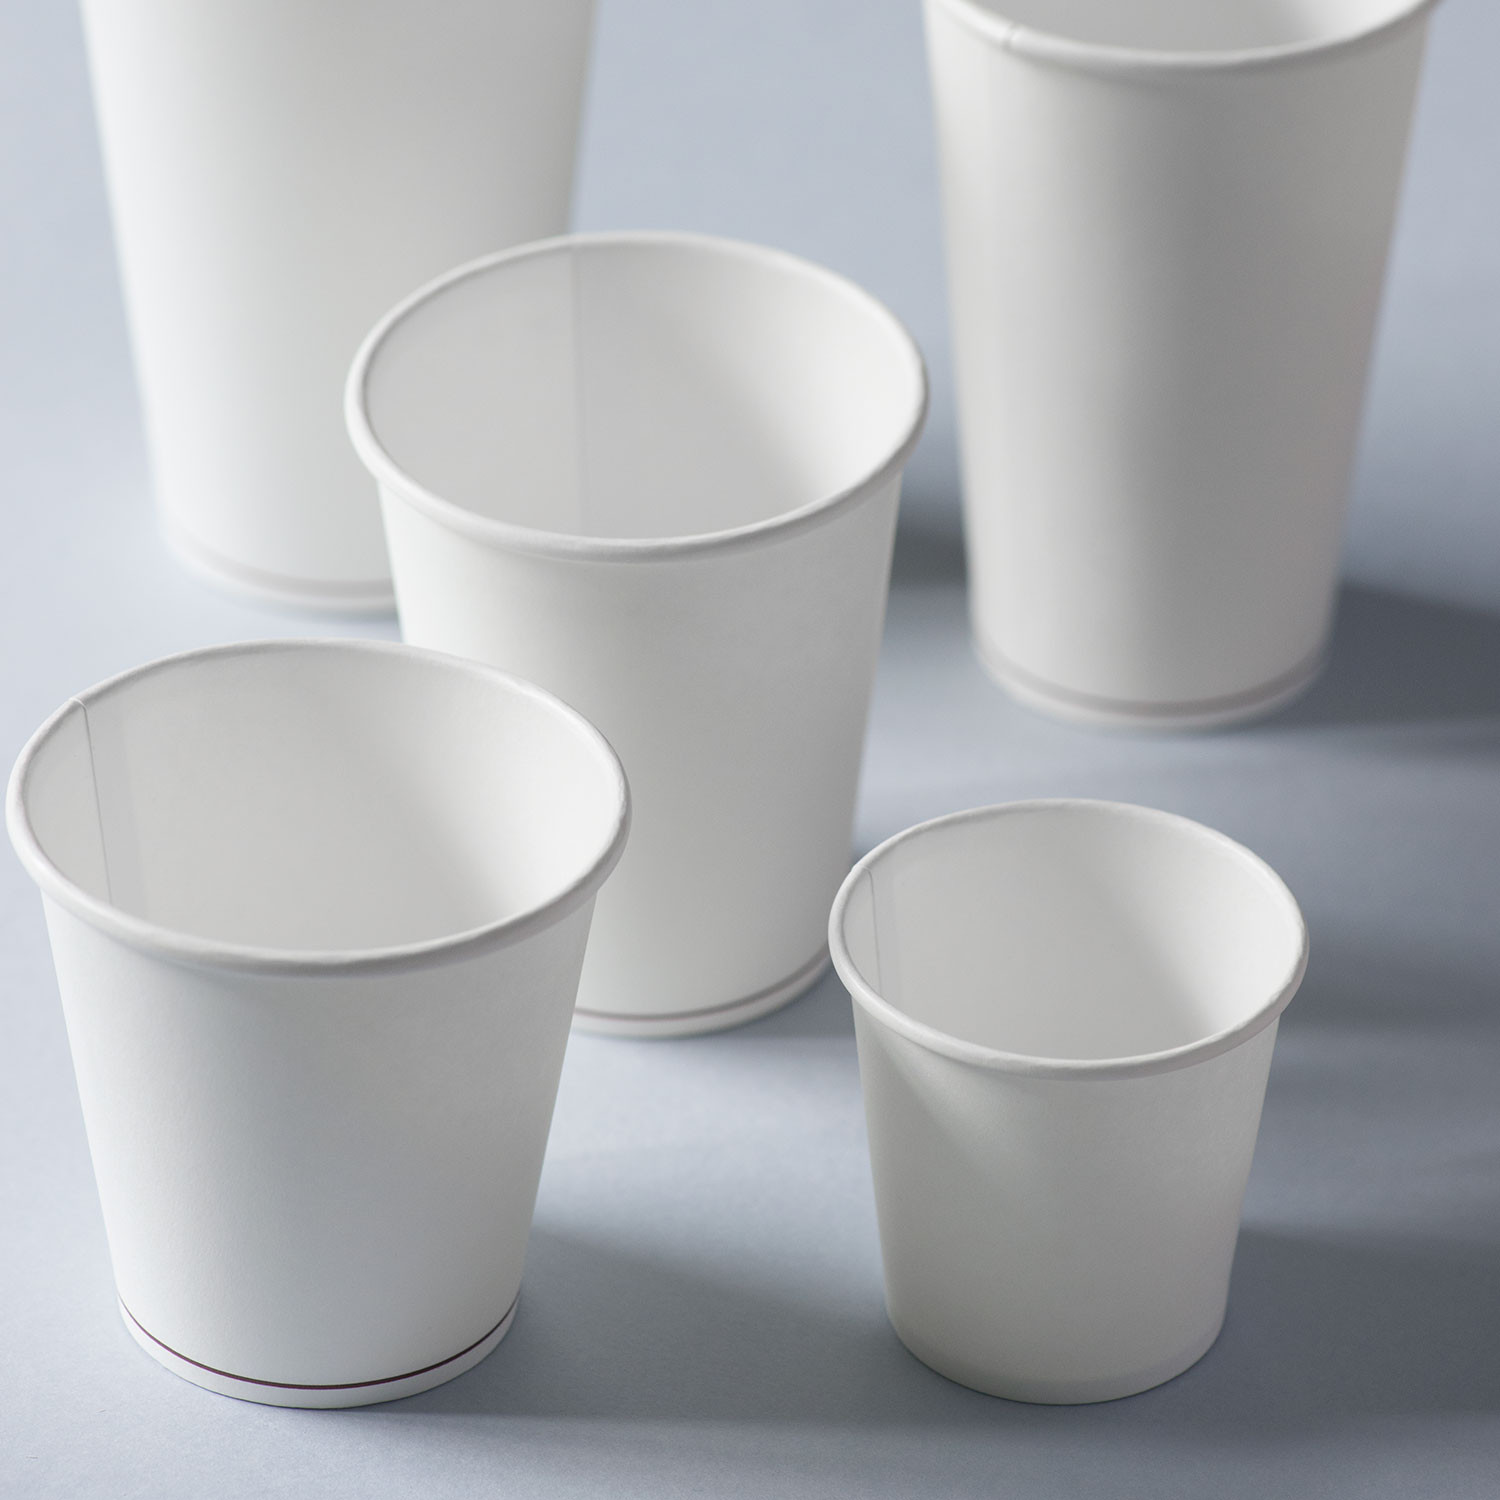 UK Business Supplies colore: bianco 100 pezzi capacità 35,5 cl Bicchieri di carta adatti per bevande calde 